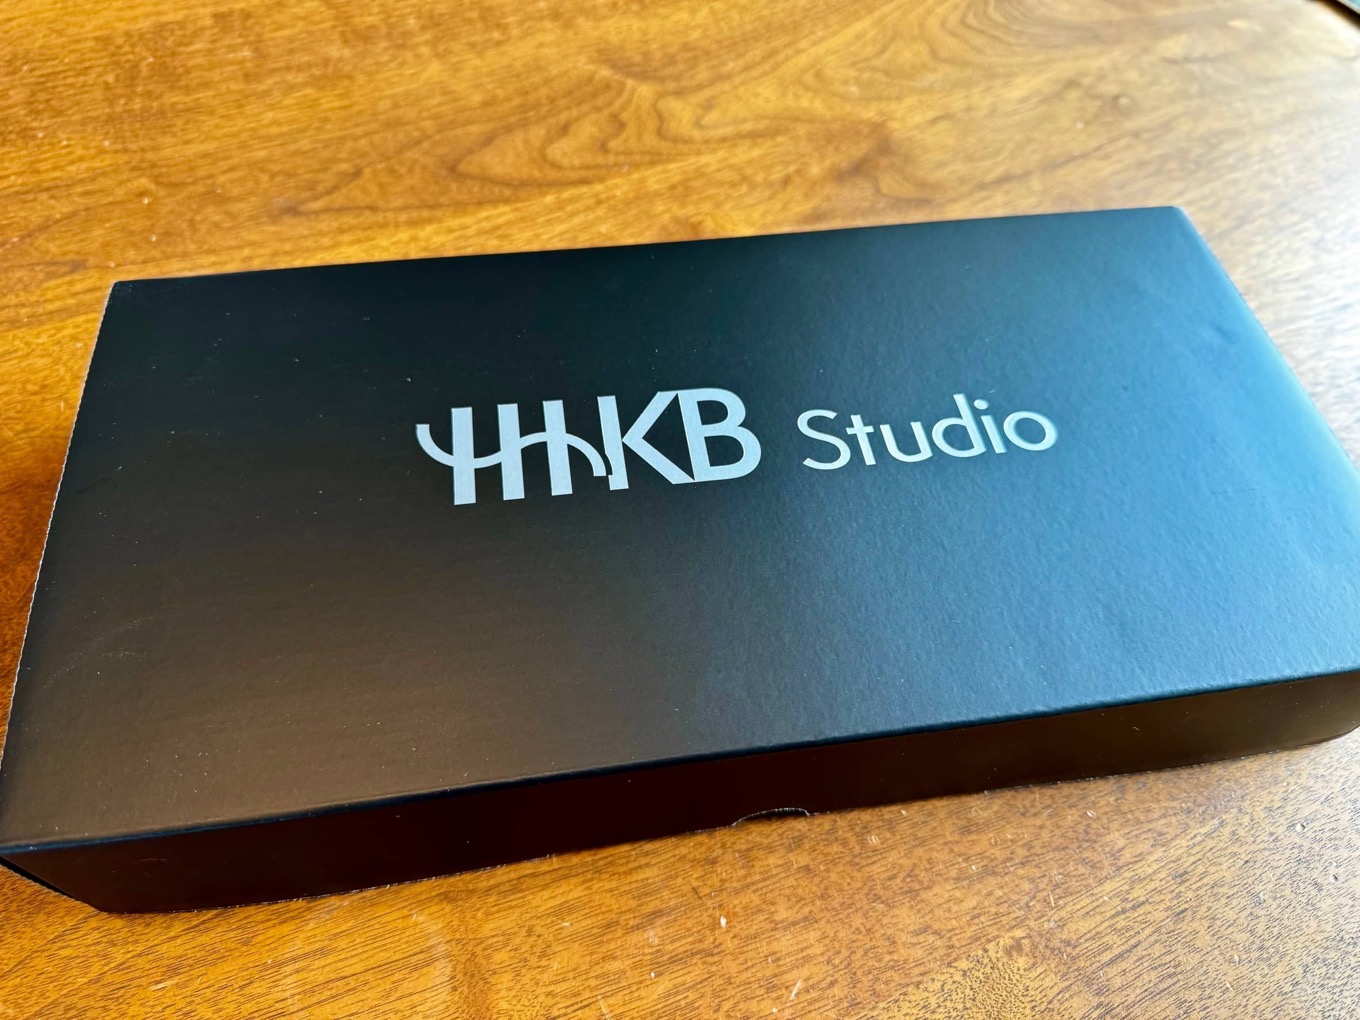 「HHKB Studio」みんなが気になっていそうなポイントを回答